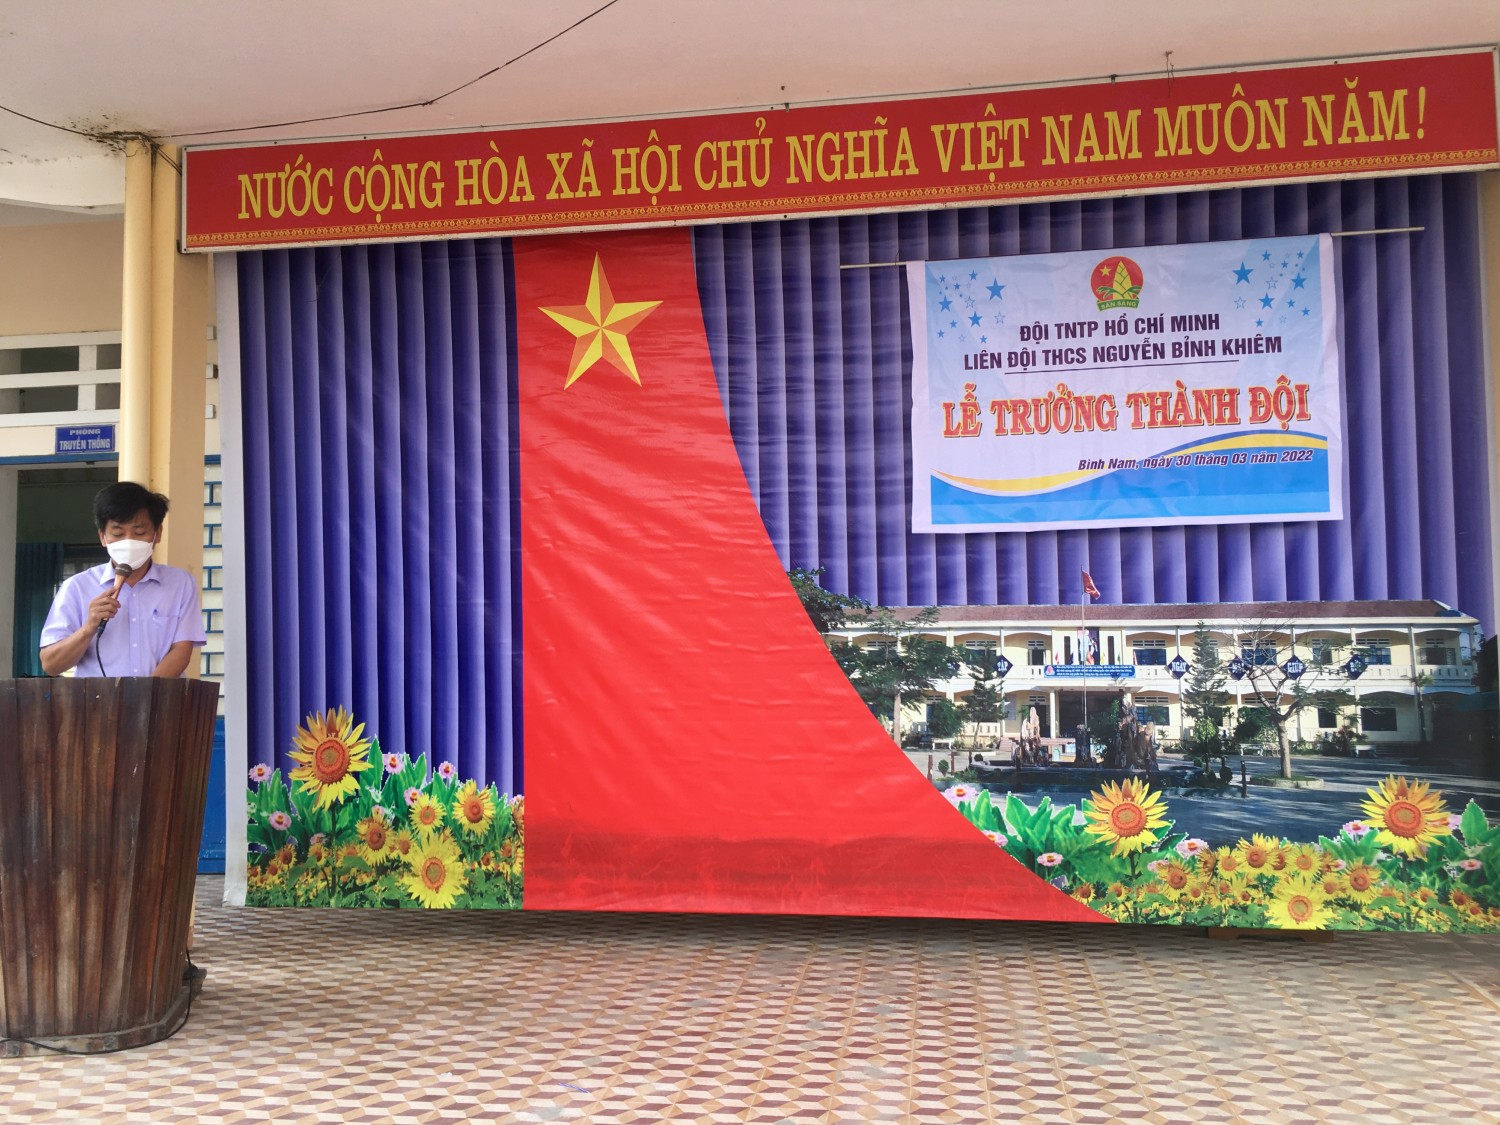 Sáng Ngày 30/3/2022 Liên đội THCS Nguyễn Bỉnh Khiêm tổ chức lễ trưởng thành Đội cho học sinh khối 9